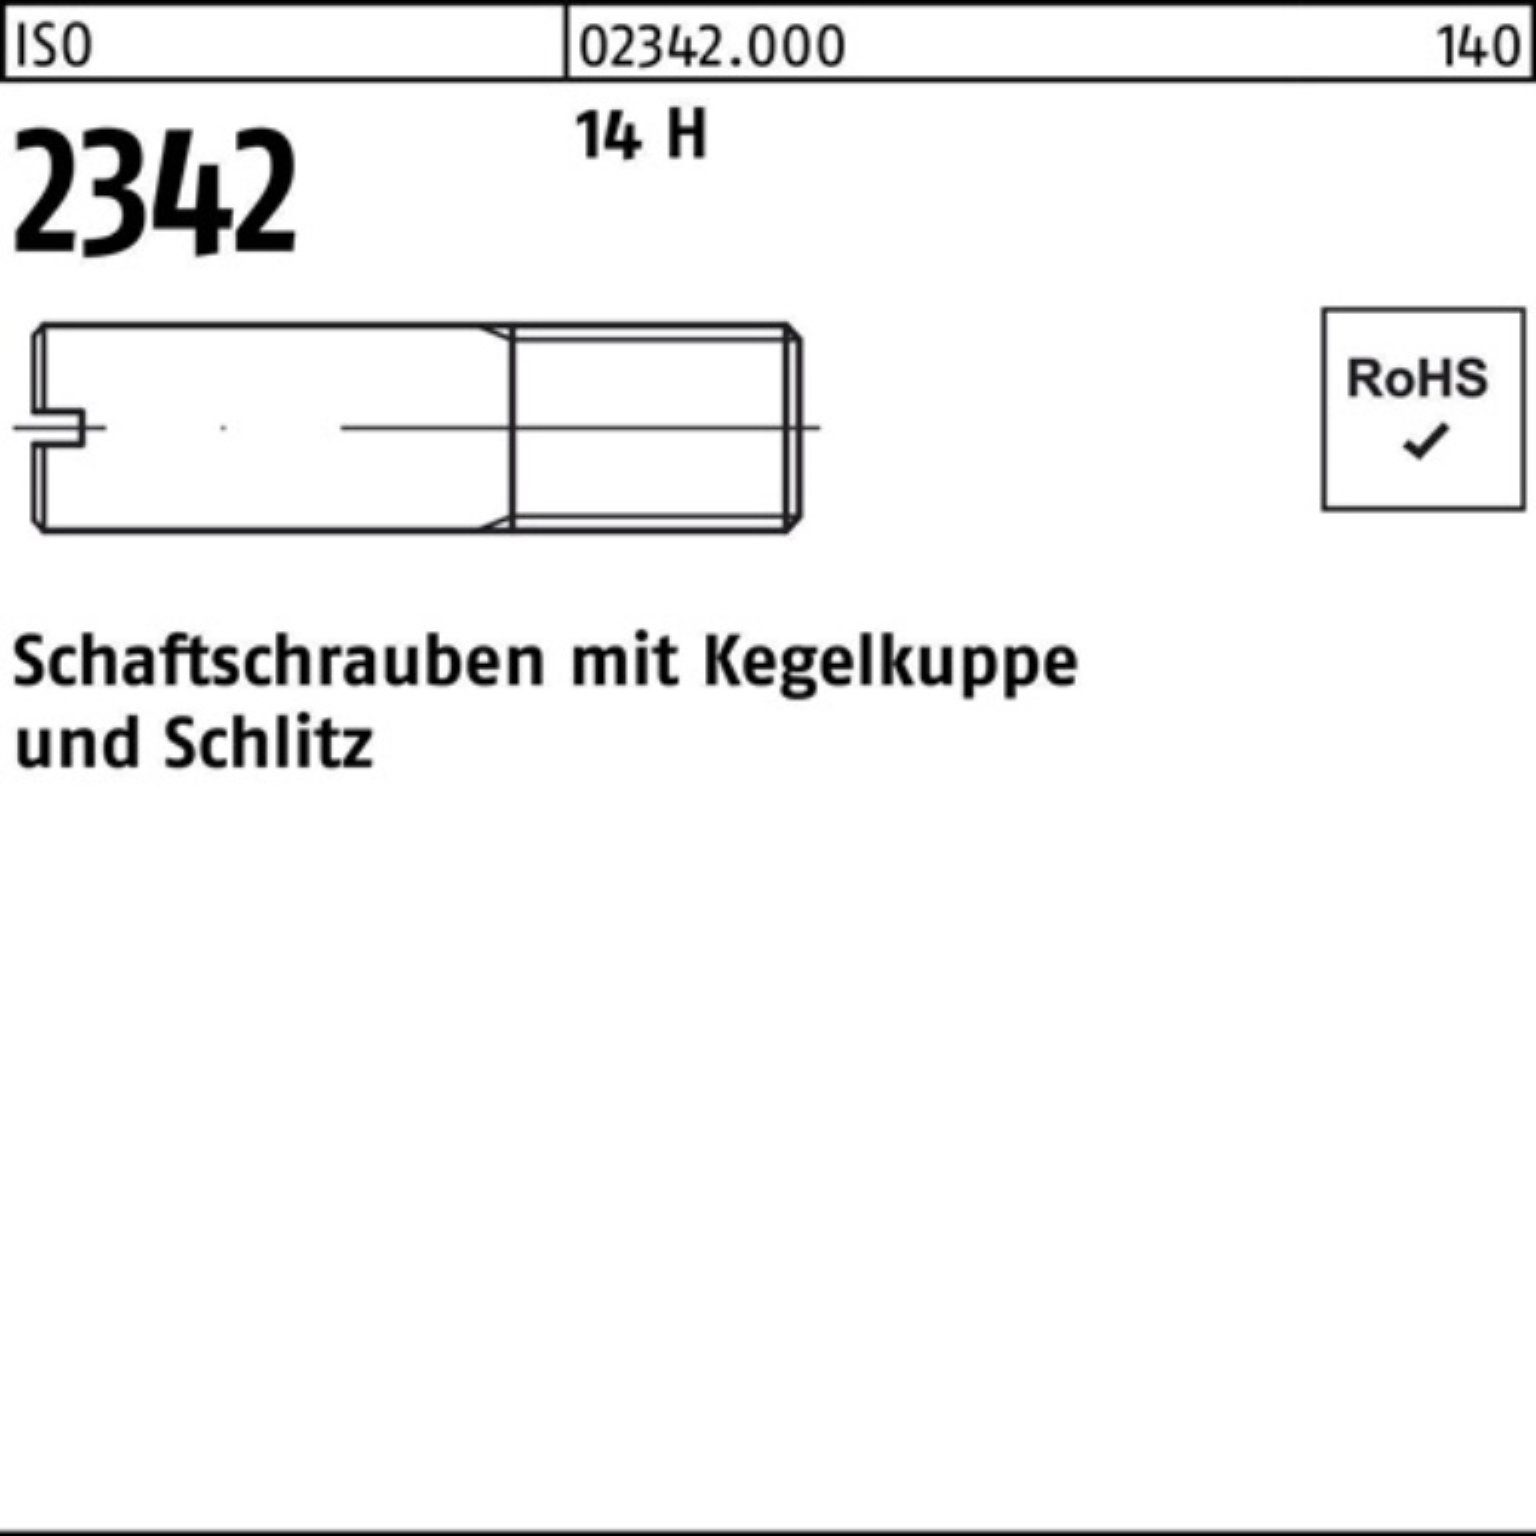 Reyher Schraube 100er Pack Schaftschraube ISO 2342 Kegelkuppe/Schlitz M4x 16 14 H 100